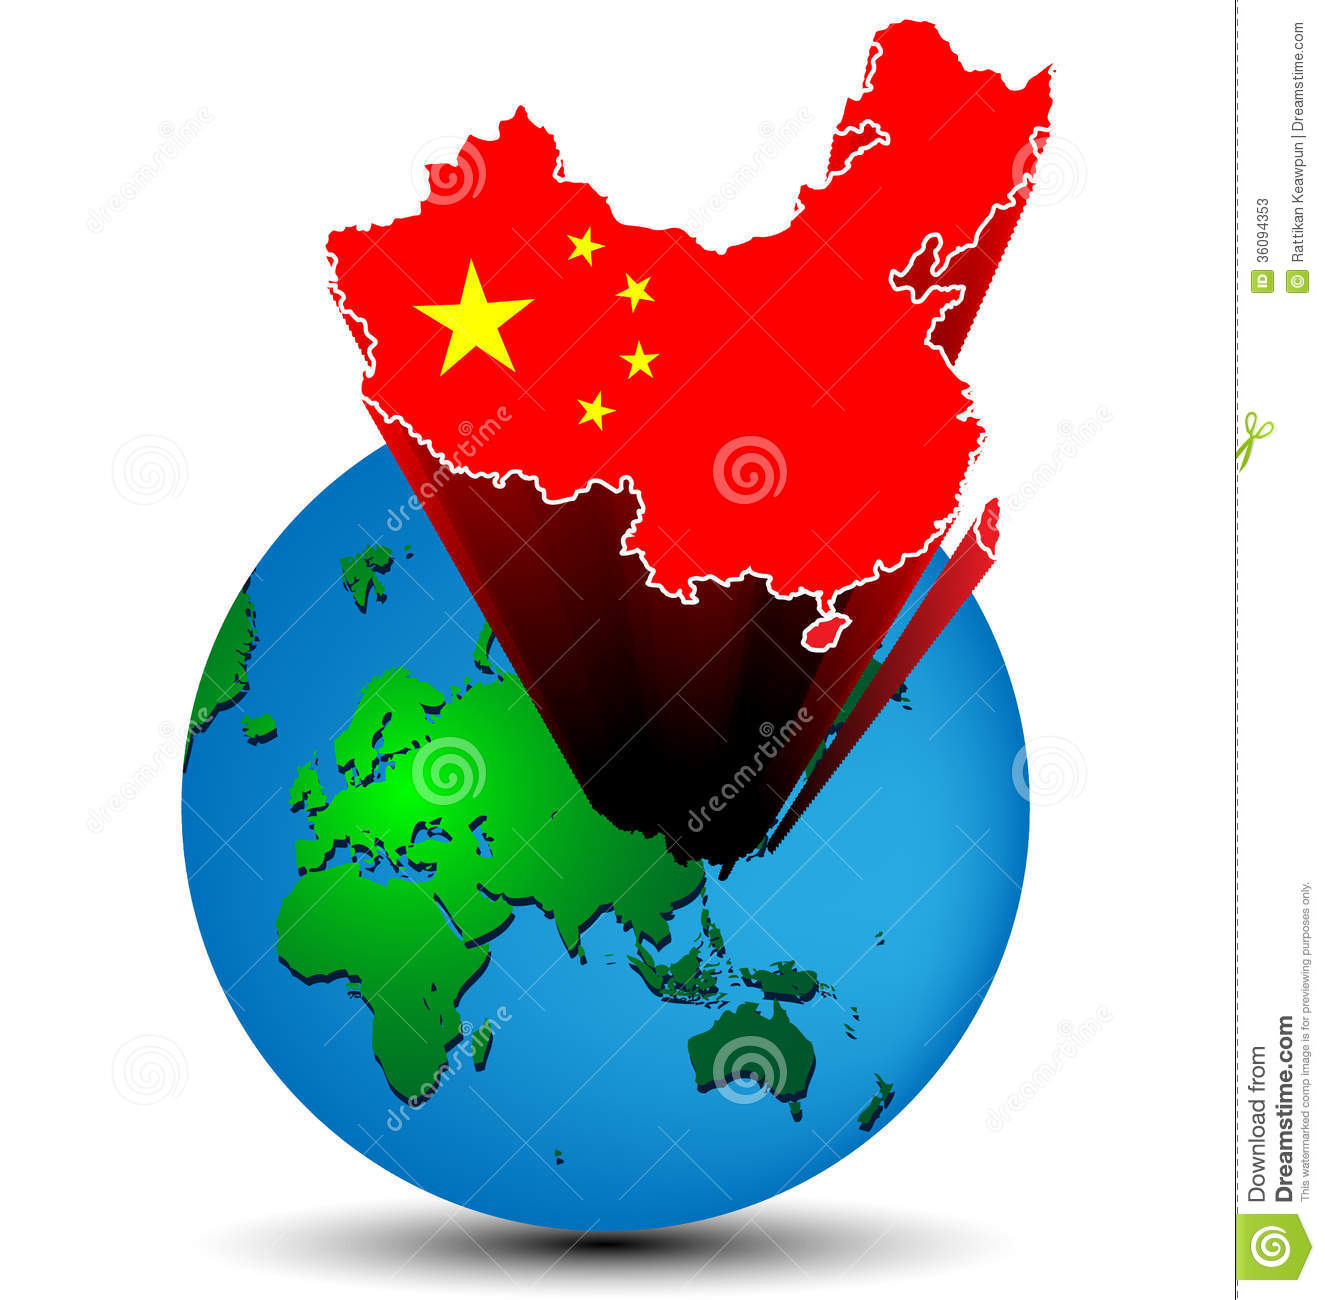 flaggen-china-karte-auf-der-erde-3609435